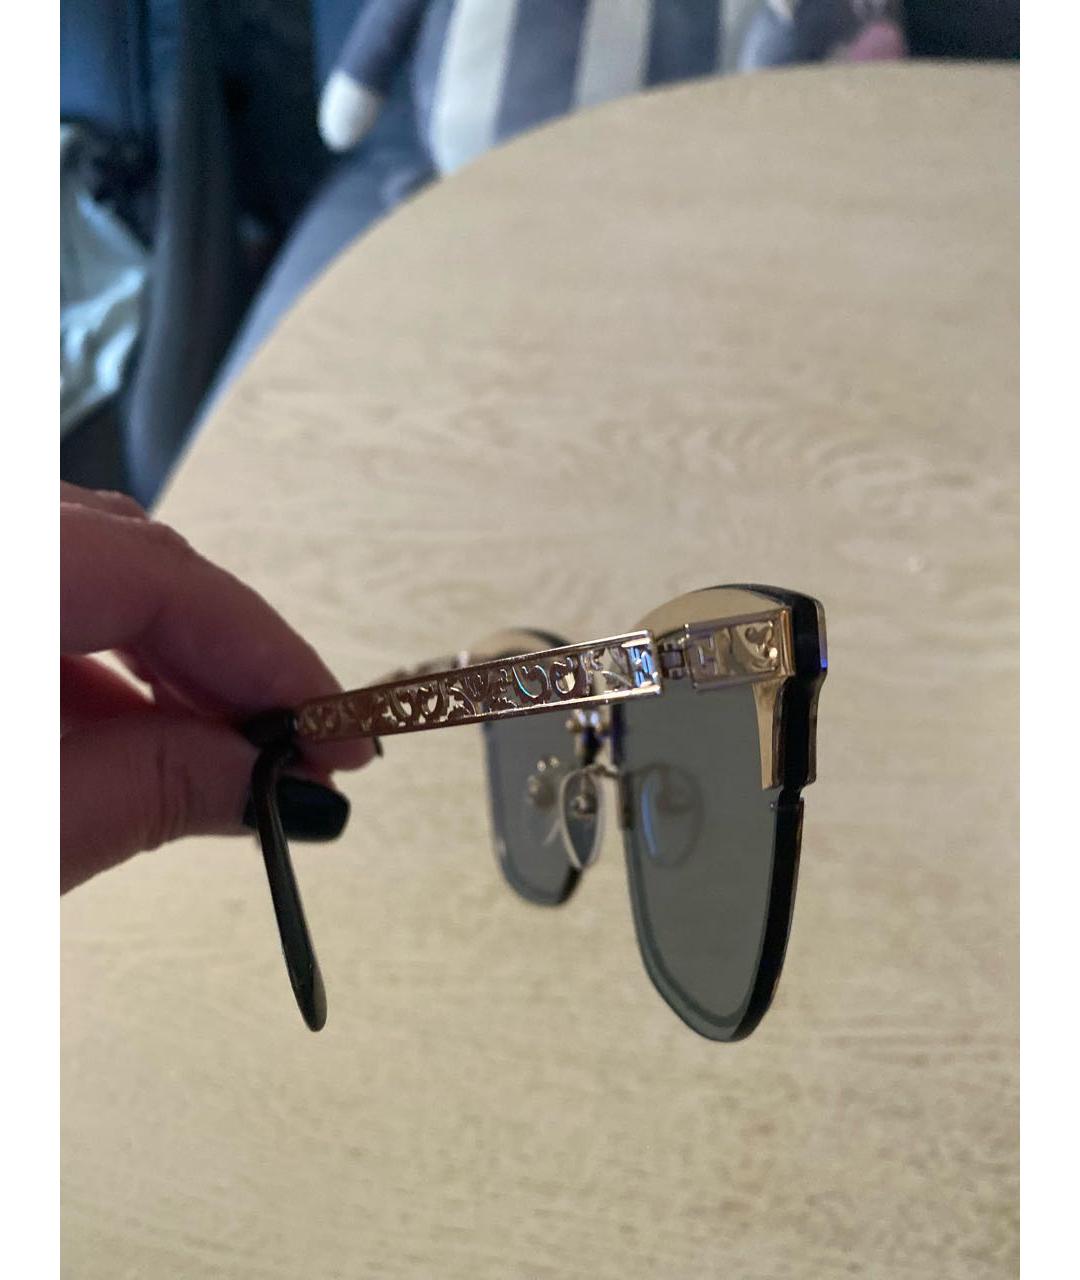 ESCADA Золотые металлические солнцезащитные очки, фото 3